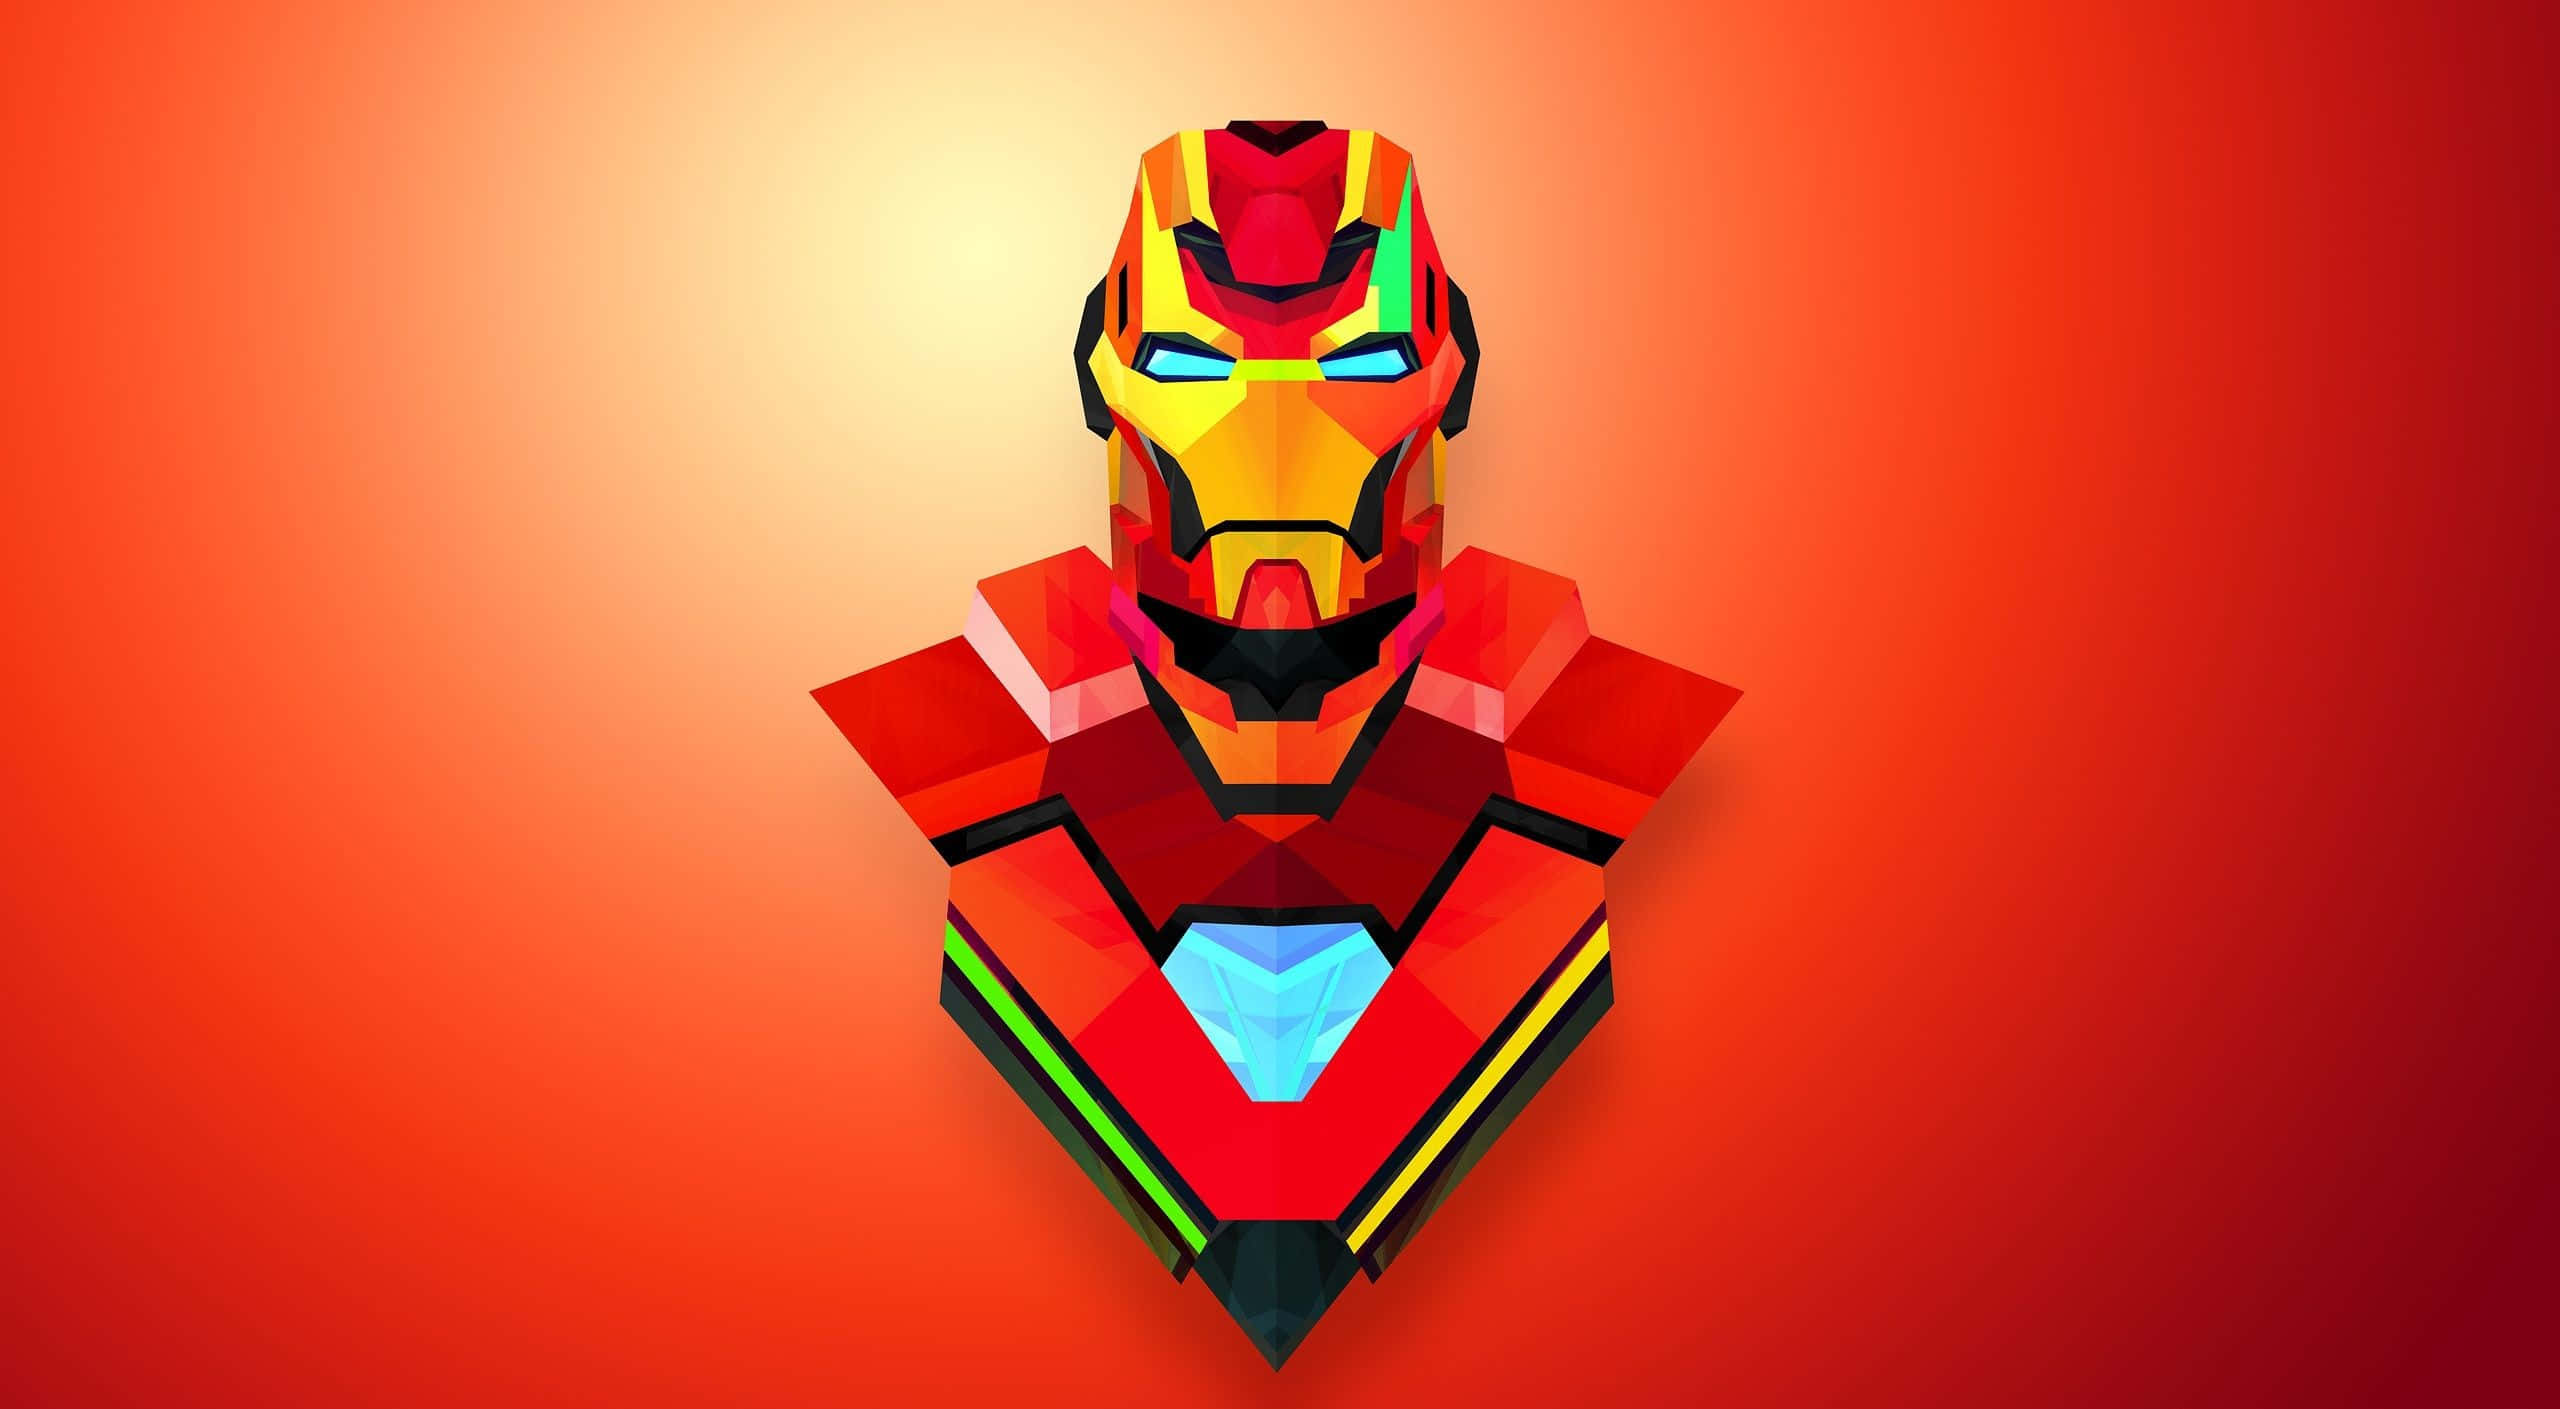 Hintergrundbildvon Iron Man